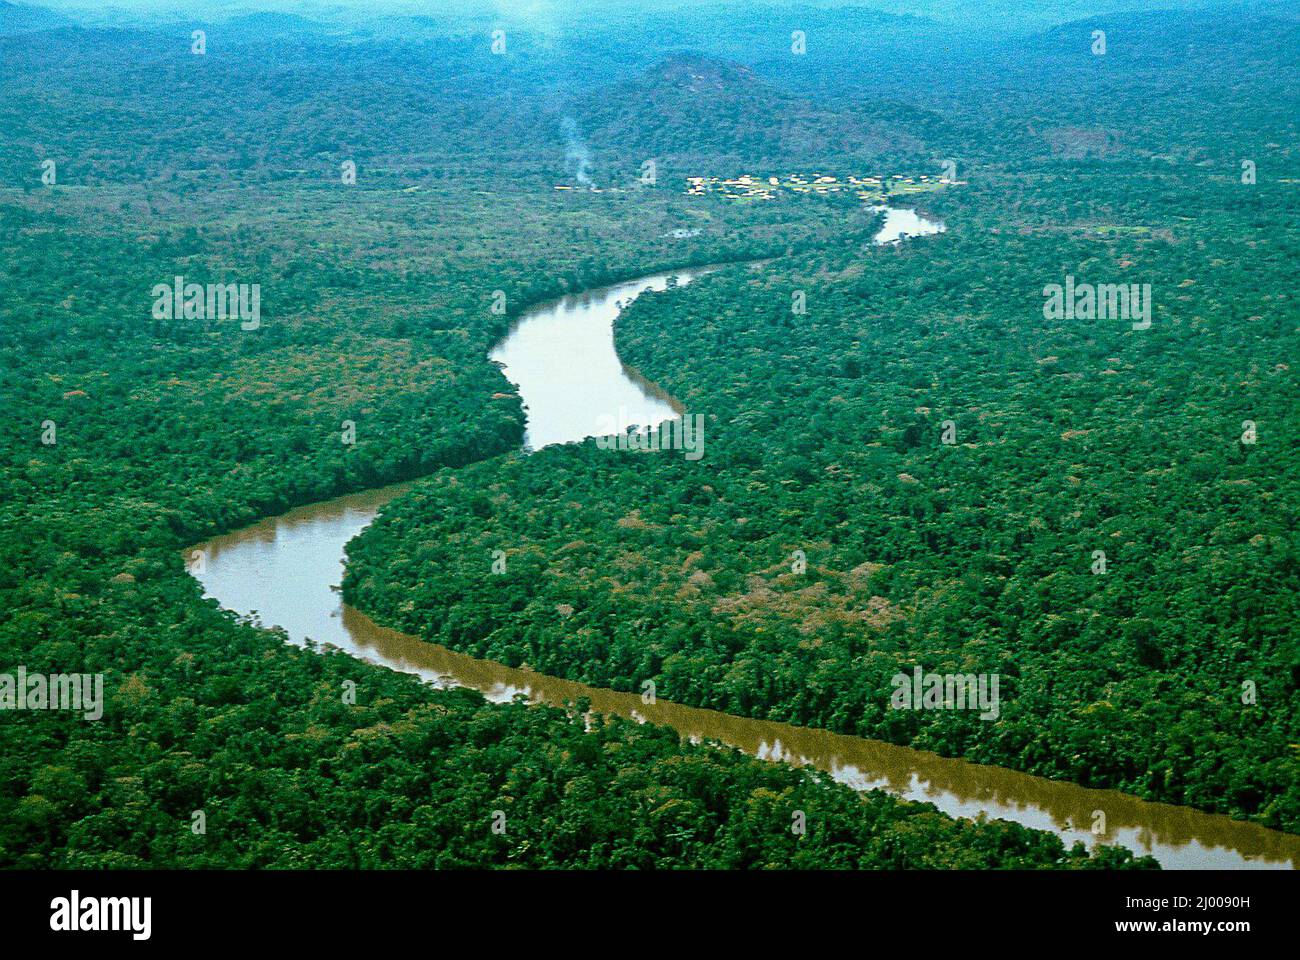 Самый полноводный приток. Река Амазонка. Река Амазонка река Амазонка. Бразилия Амазонская низменность. Исток реки Амазонка.